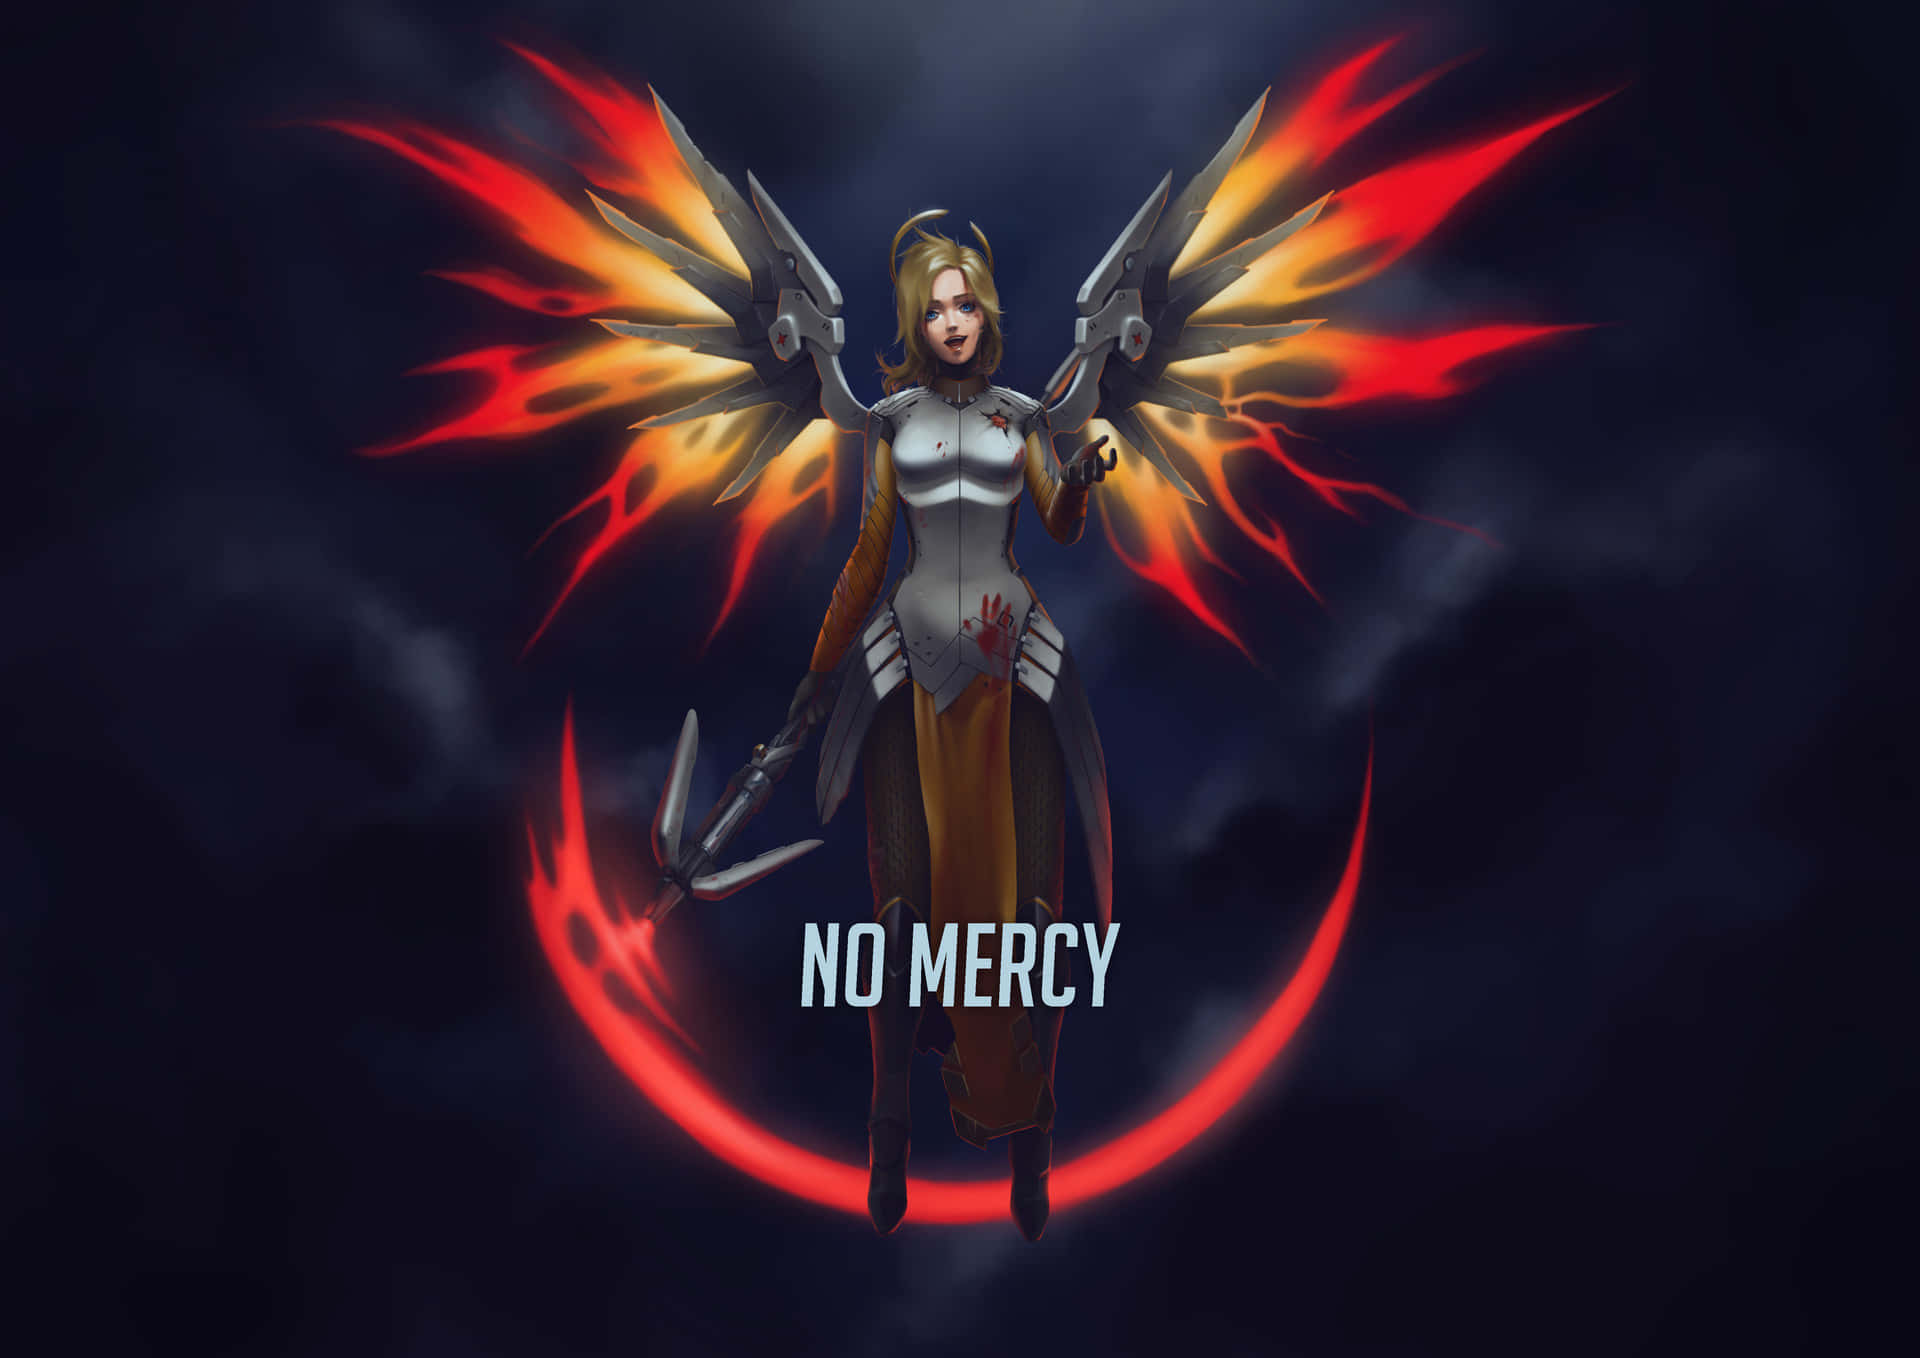 Overwatch Hero Mercy in Action Wallpaper